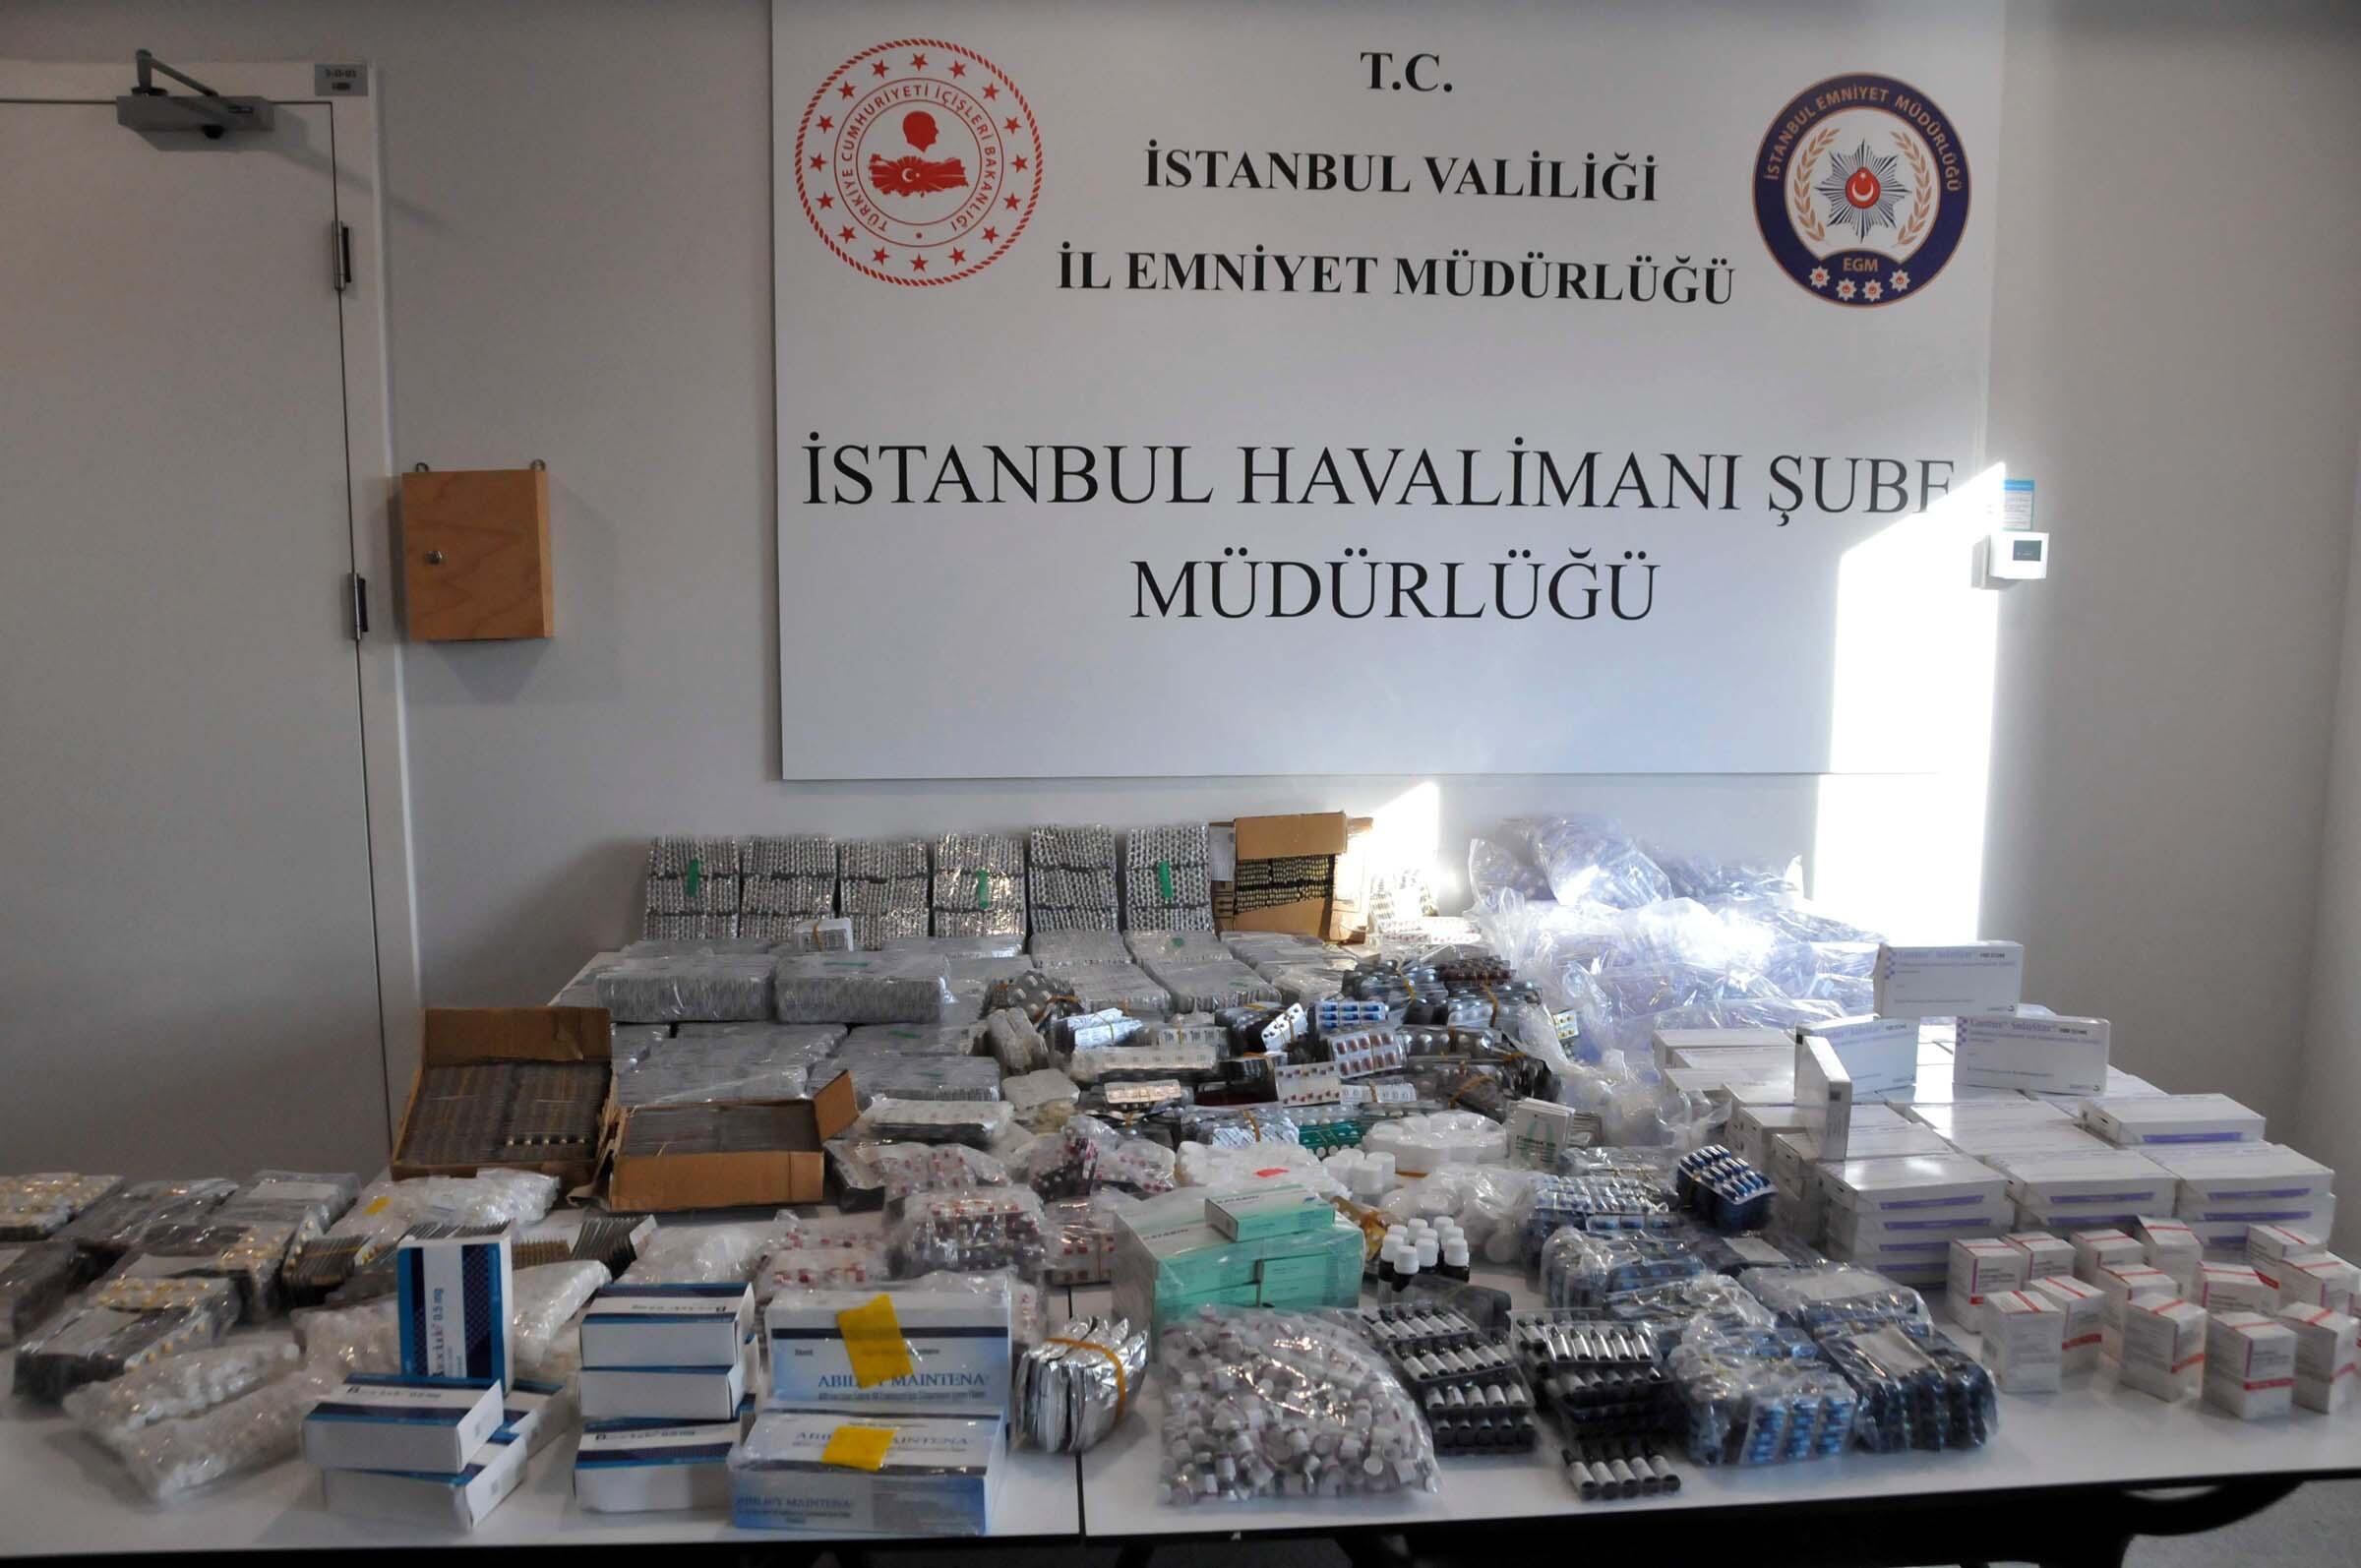 İstanbul Havalimanında kaçak ilaç operasyonu: 1 milyon dolarlık ilaç ele geçirildi